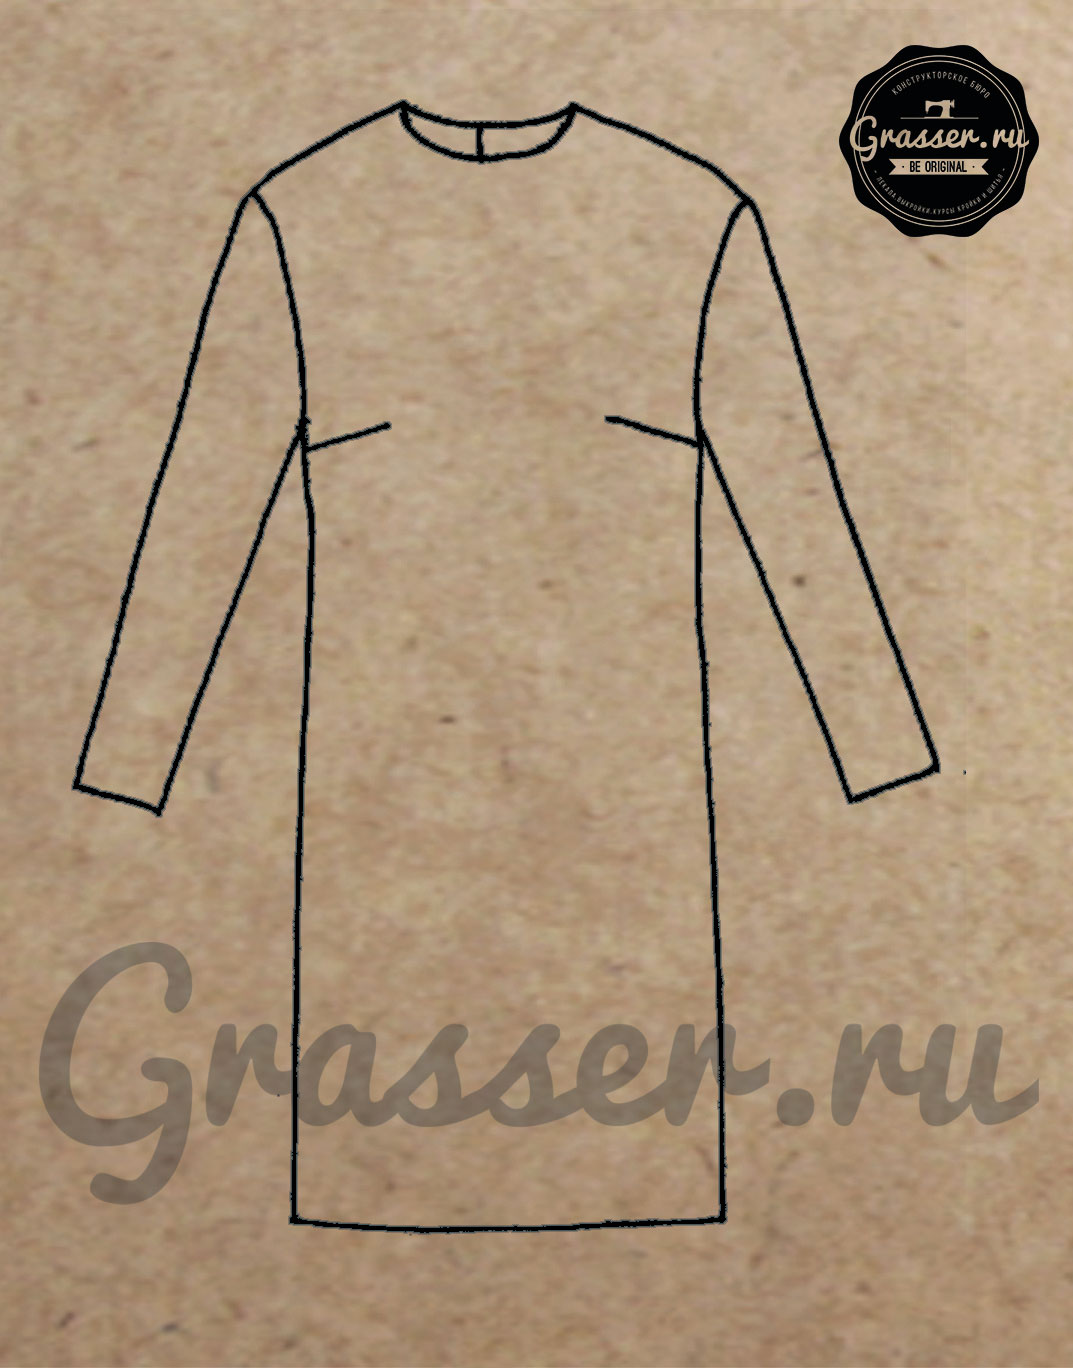 Базовые лекала платья из трикотажа, рукав рубашечный, объем средний, выкройка Grasser №134